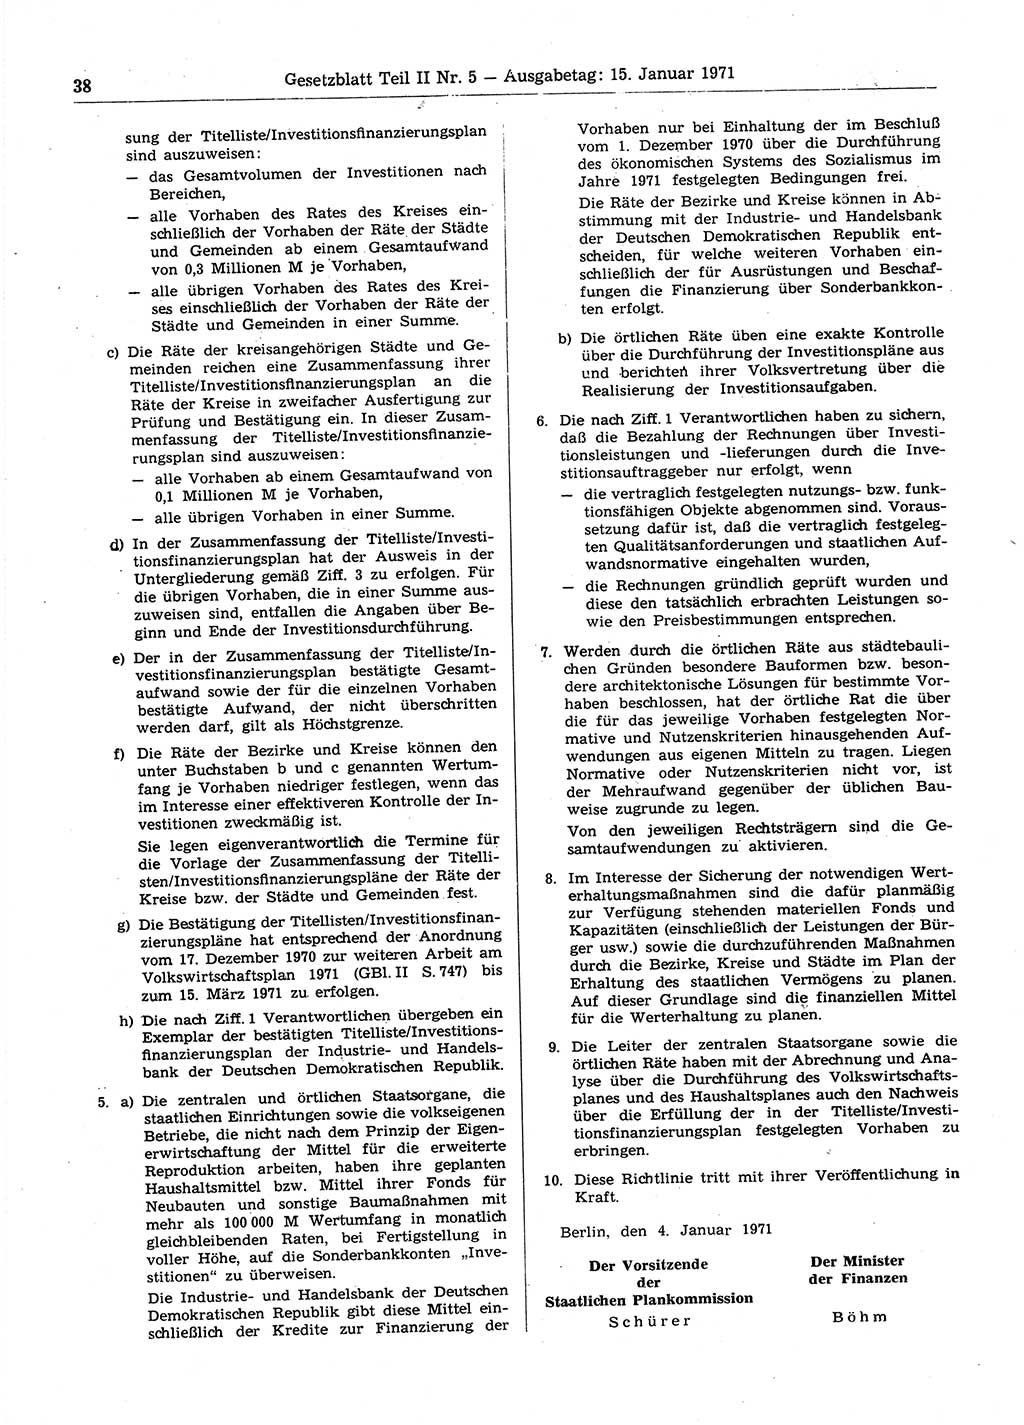 Gesetzblatt (GBl.) der Deutschen Demokratischen Republik (DDR) Teil ⅠⅠ 1971, Seite 38 (GBl. DDR ⅠⅠ 1971, S. 38)